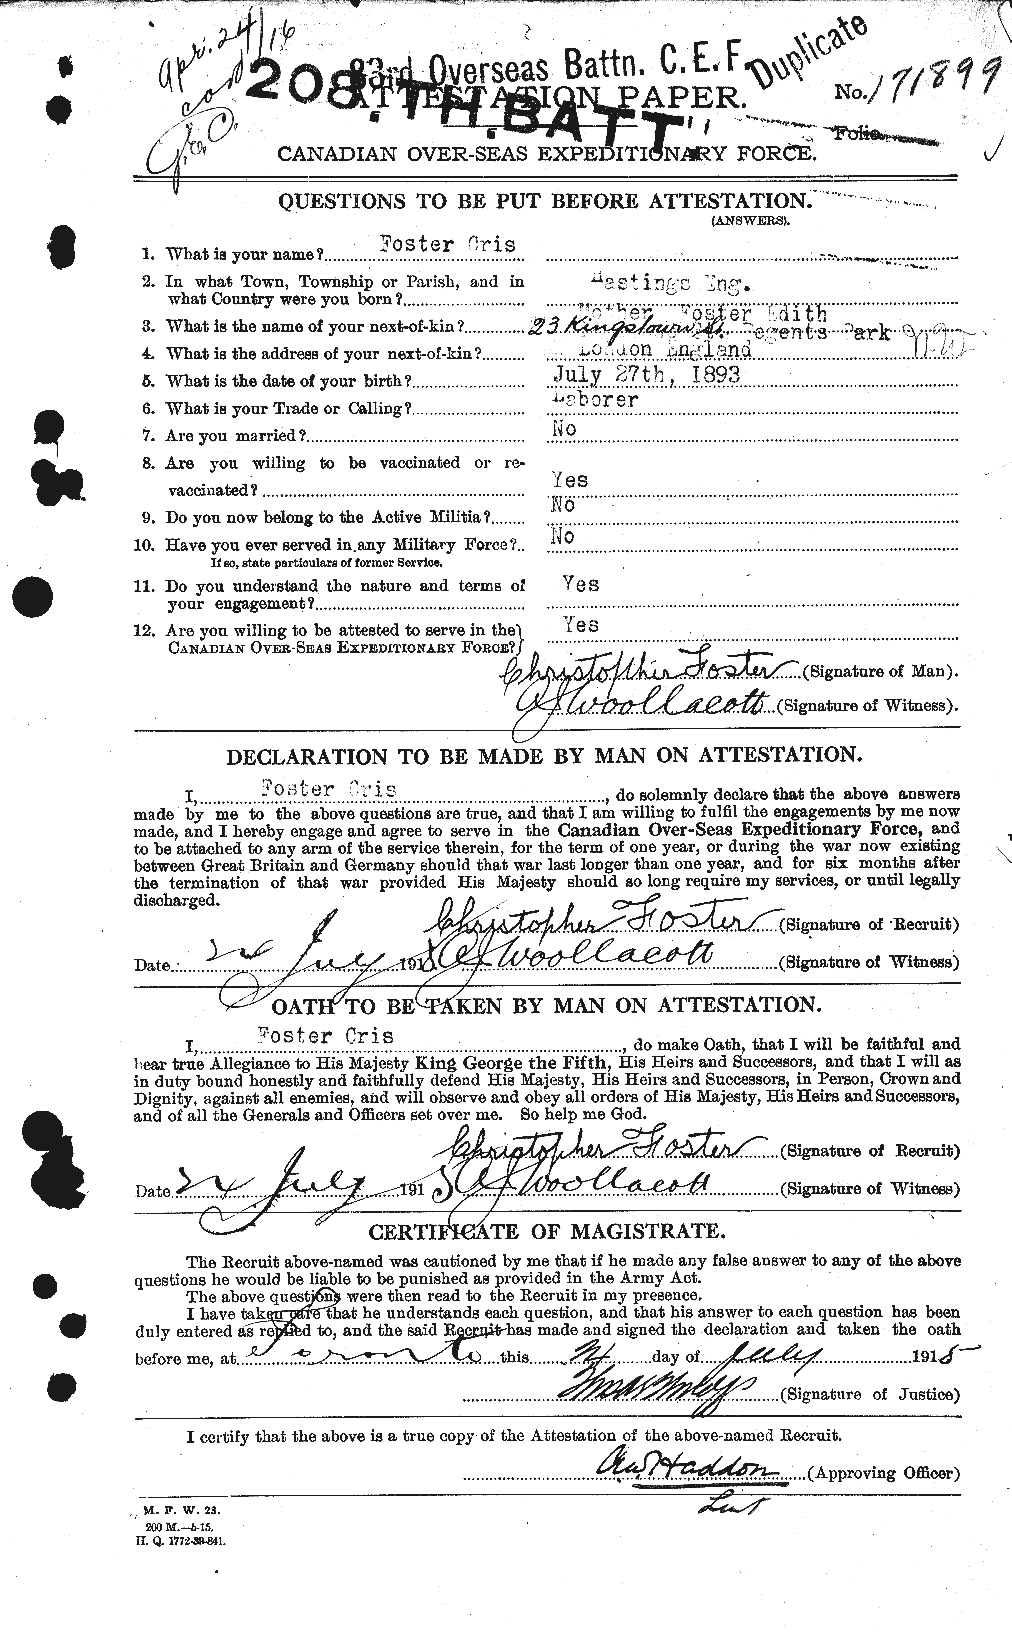 Dossiers du Personnel de la Première Guerre mondiale - CEC 330531a